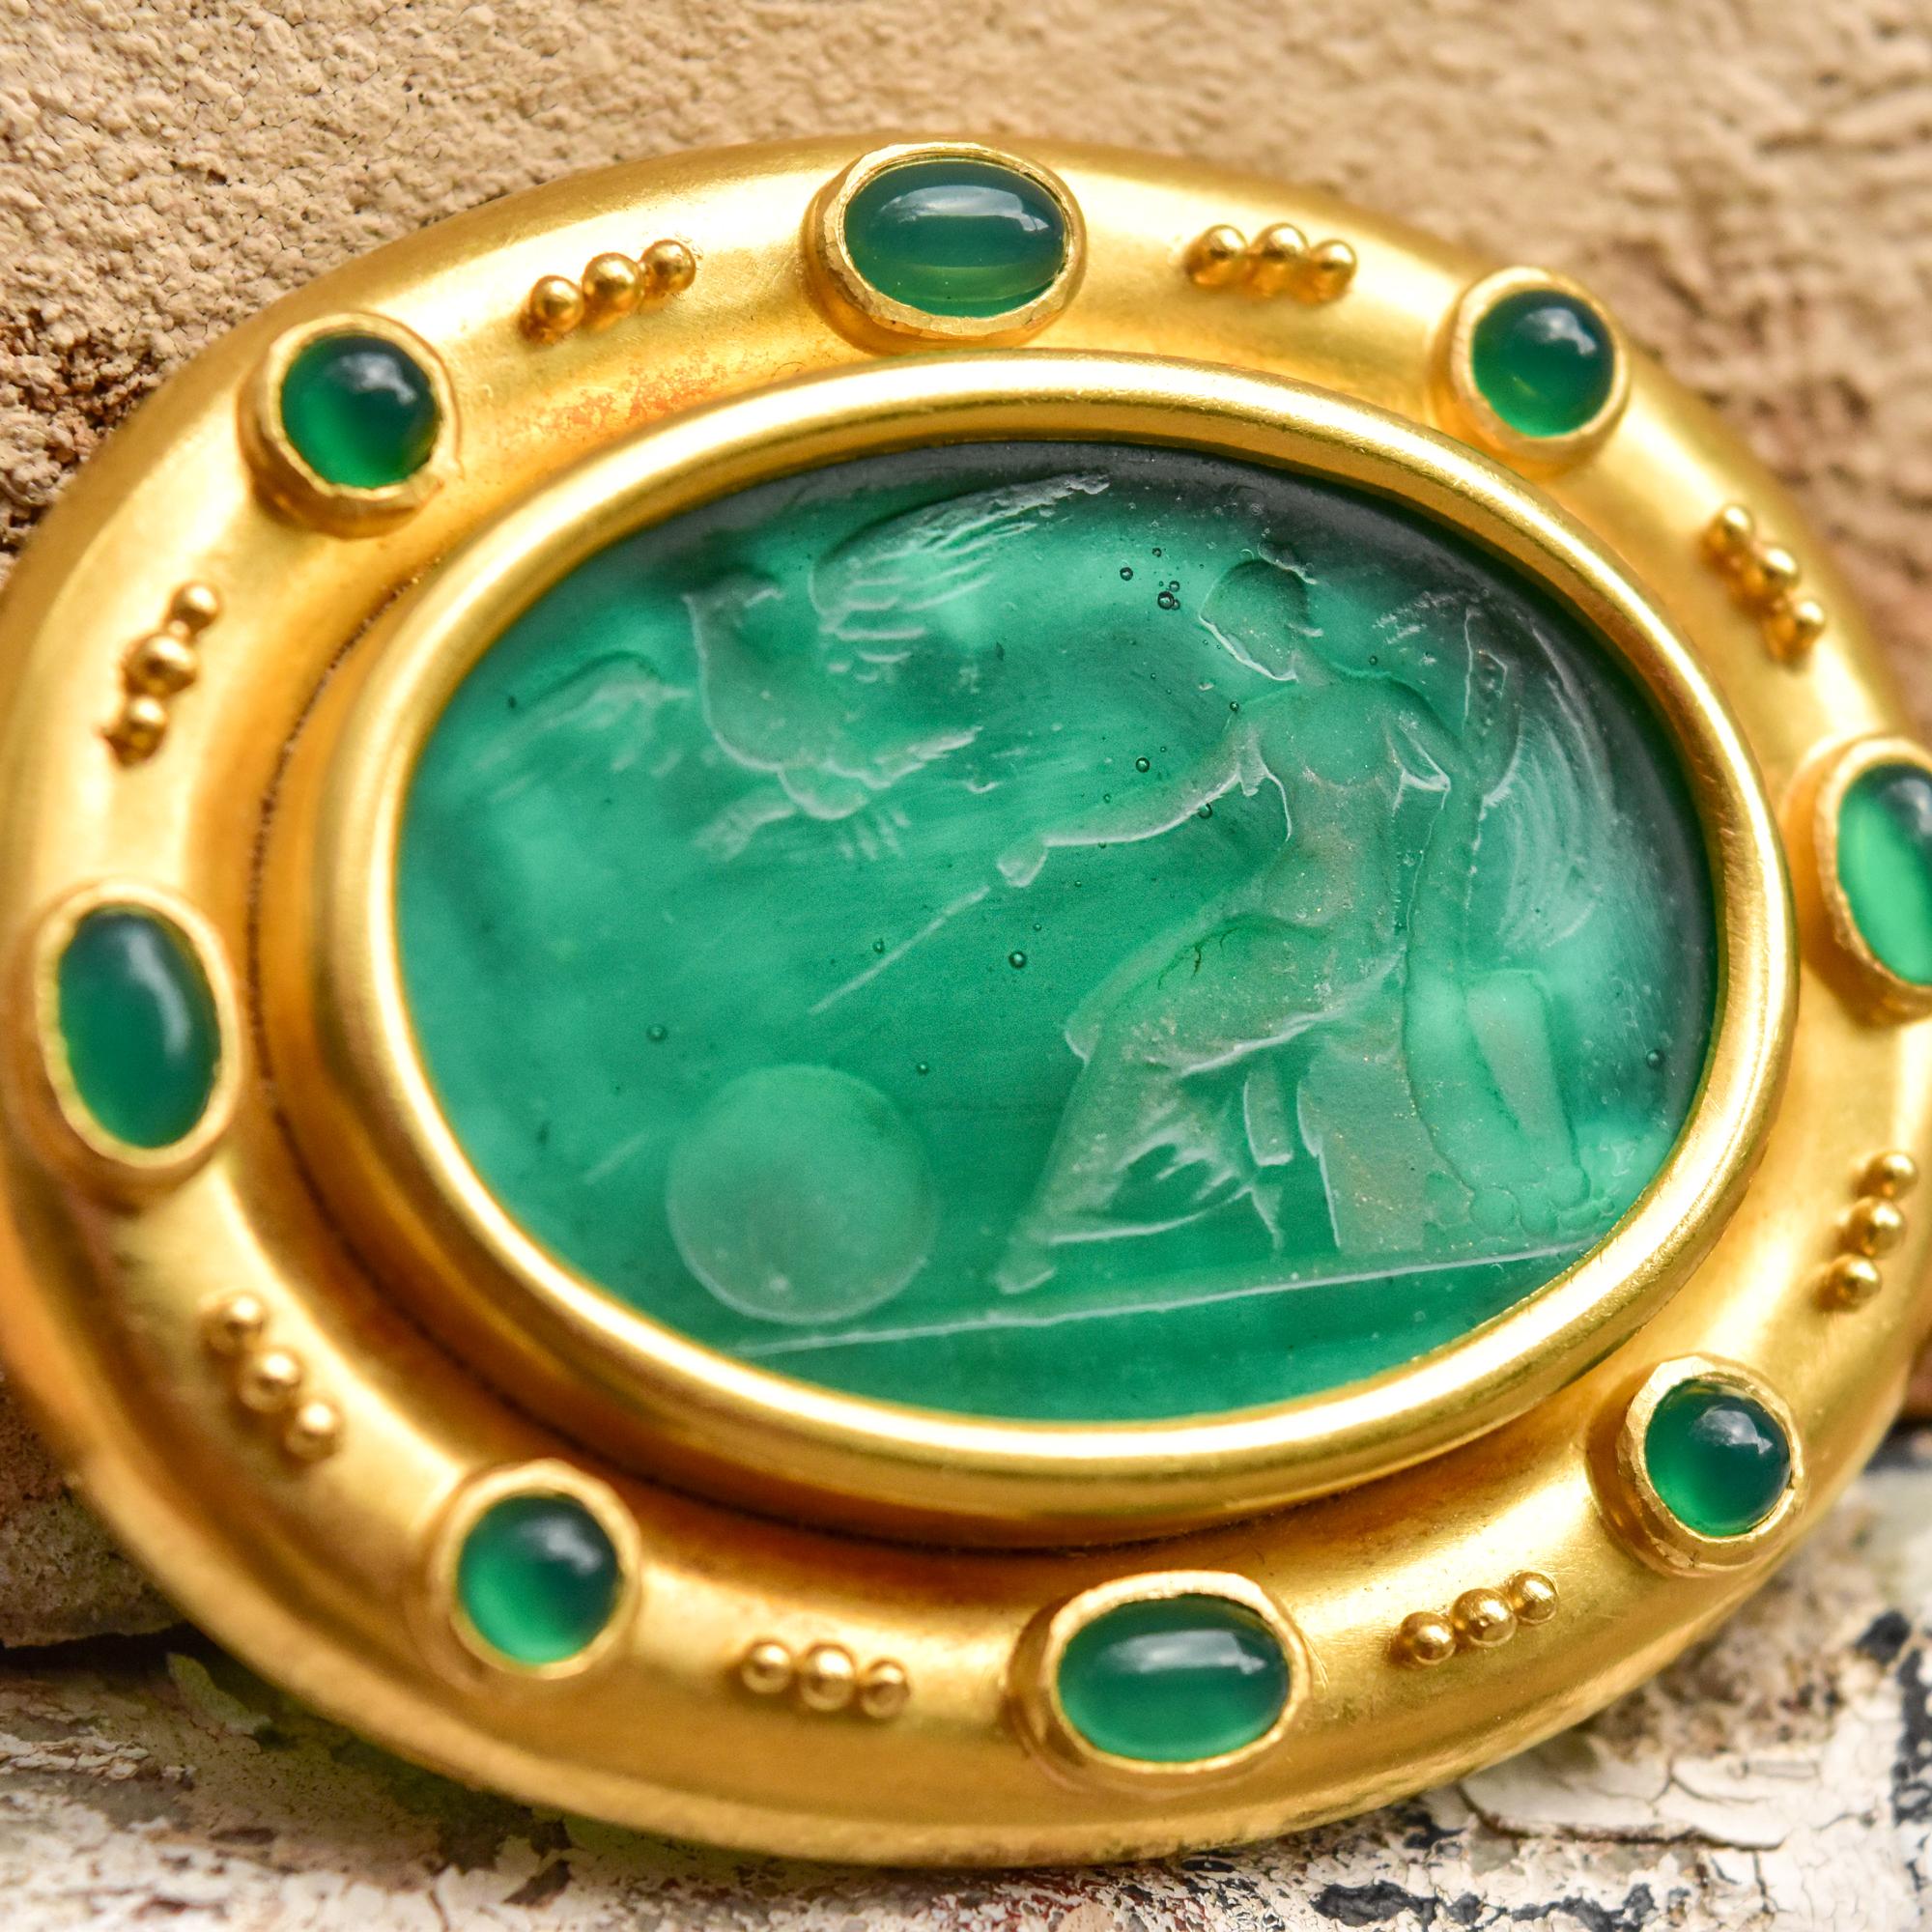 Women's or Men's Elizabeth Locke 18k Venetian Glass Intaglio Brooch Pendant